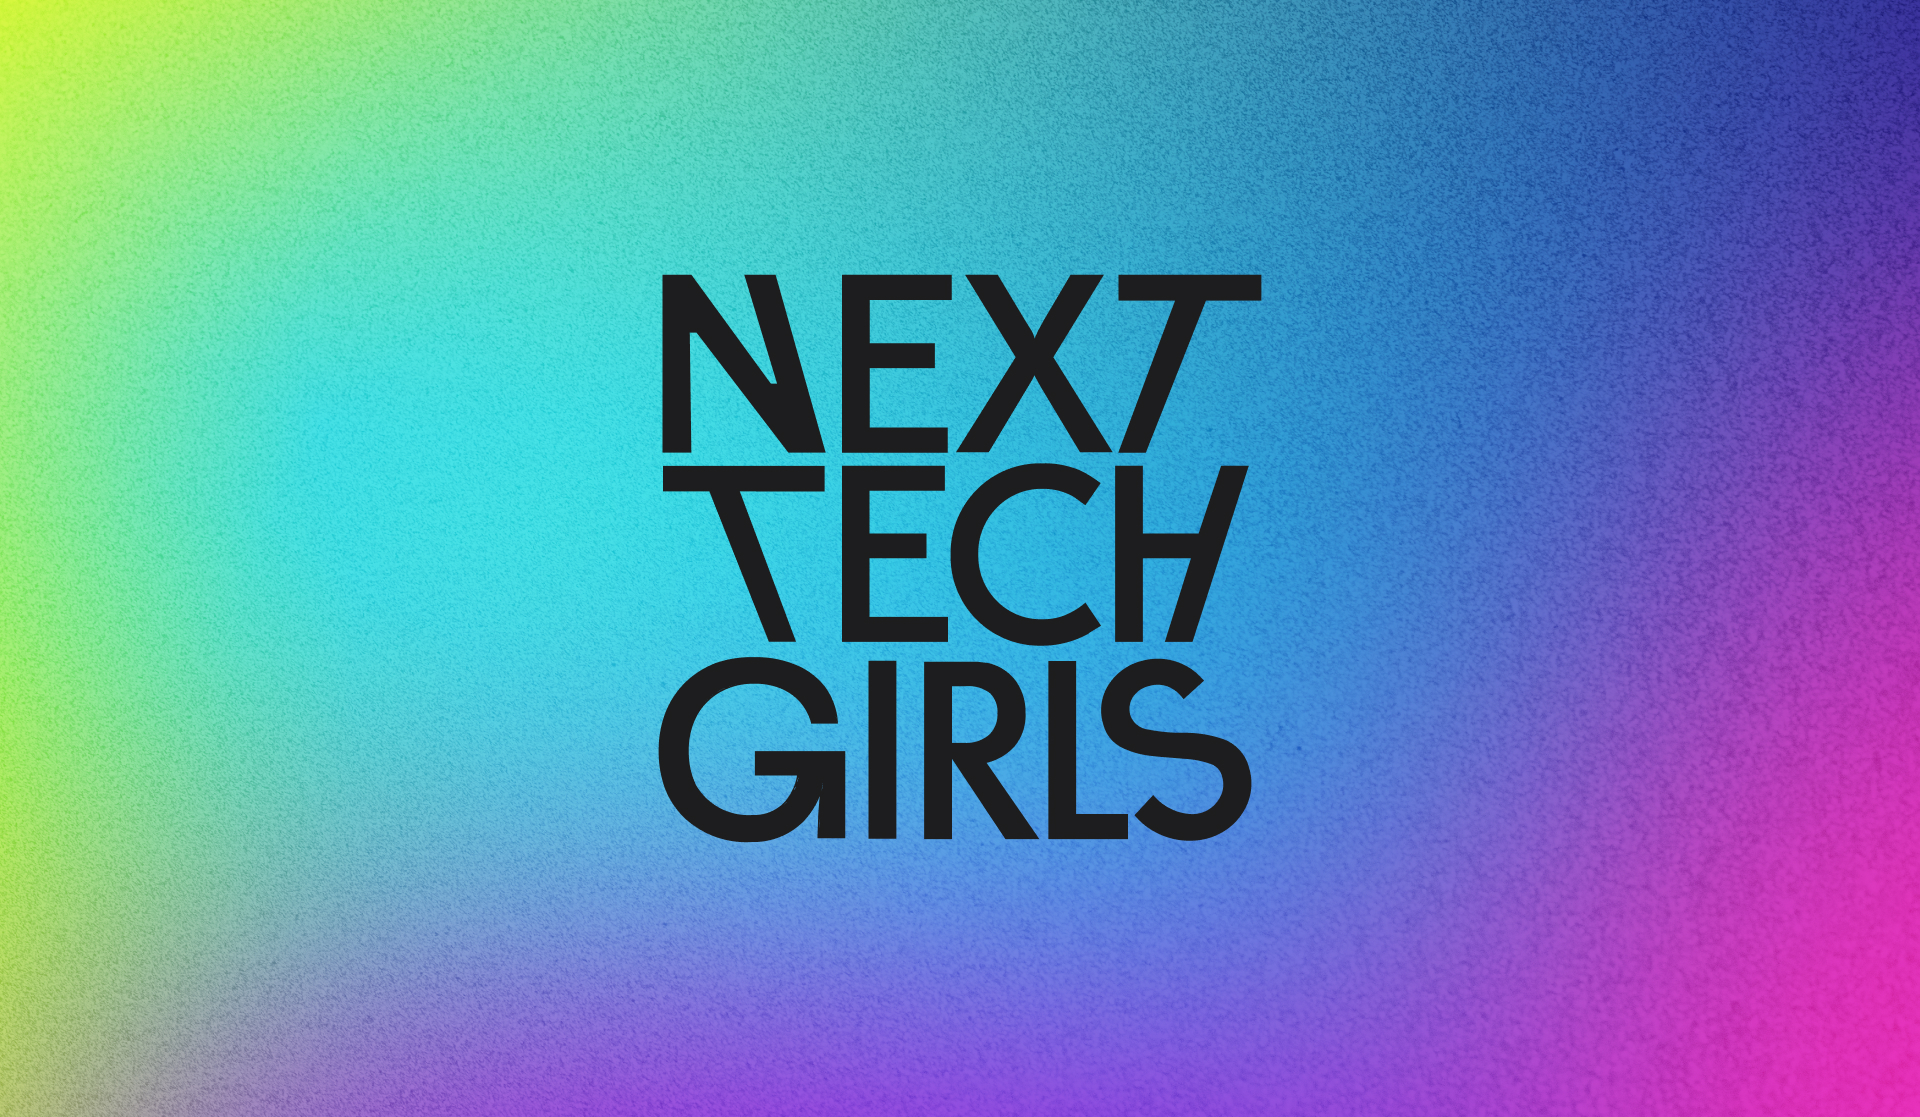 Next Tech Girls Brand Design Creation